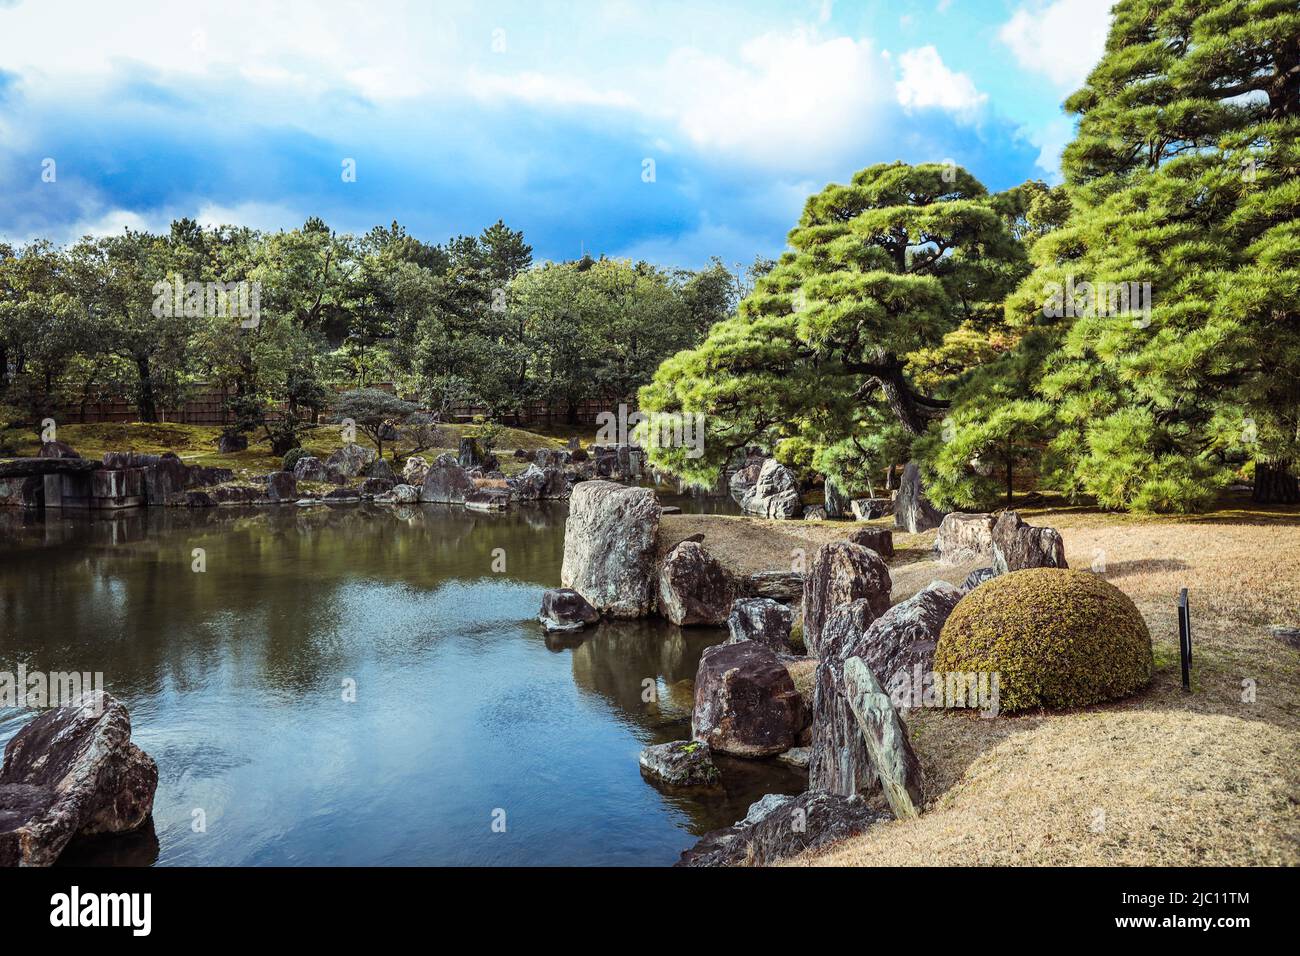 Beautiful Nijo Castle in Kyoto, Japan Stock Photo